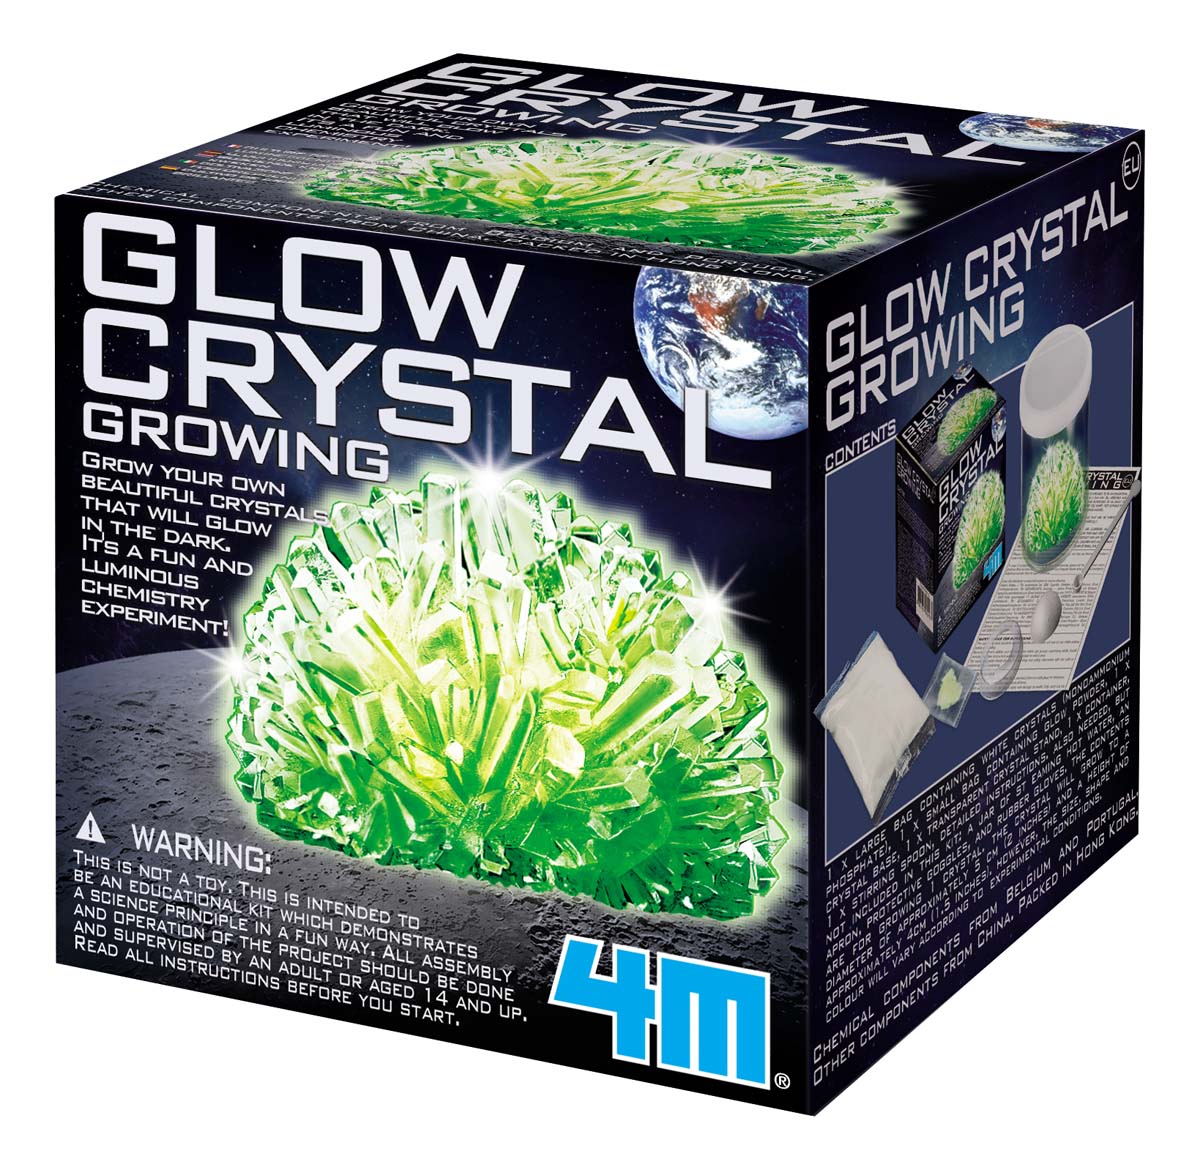 4M-Crystal Growing Glow Growing Kit